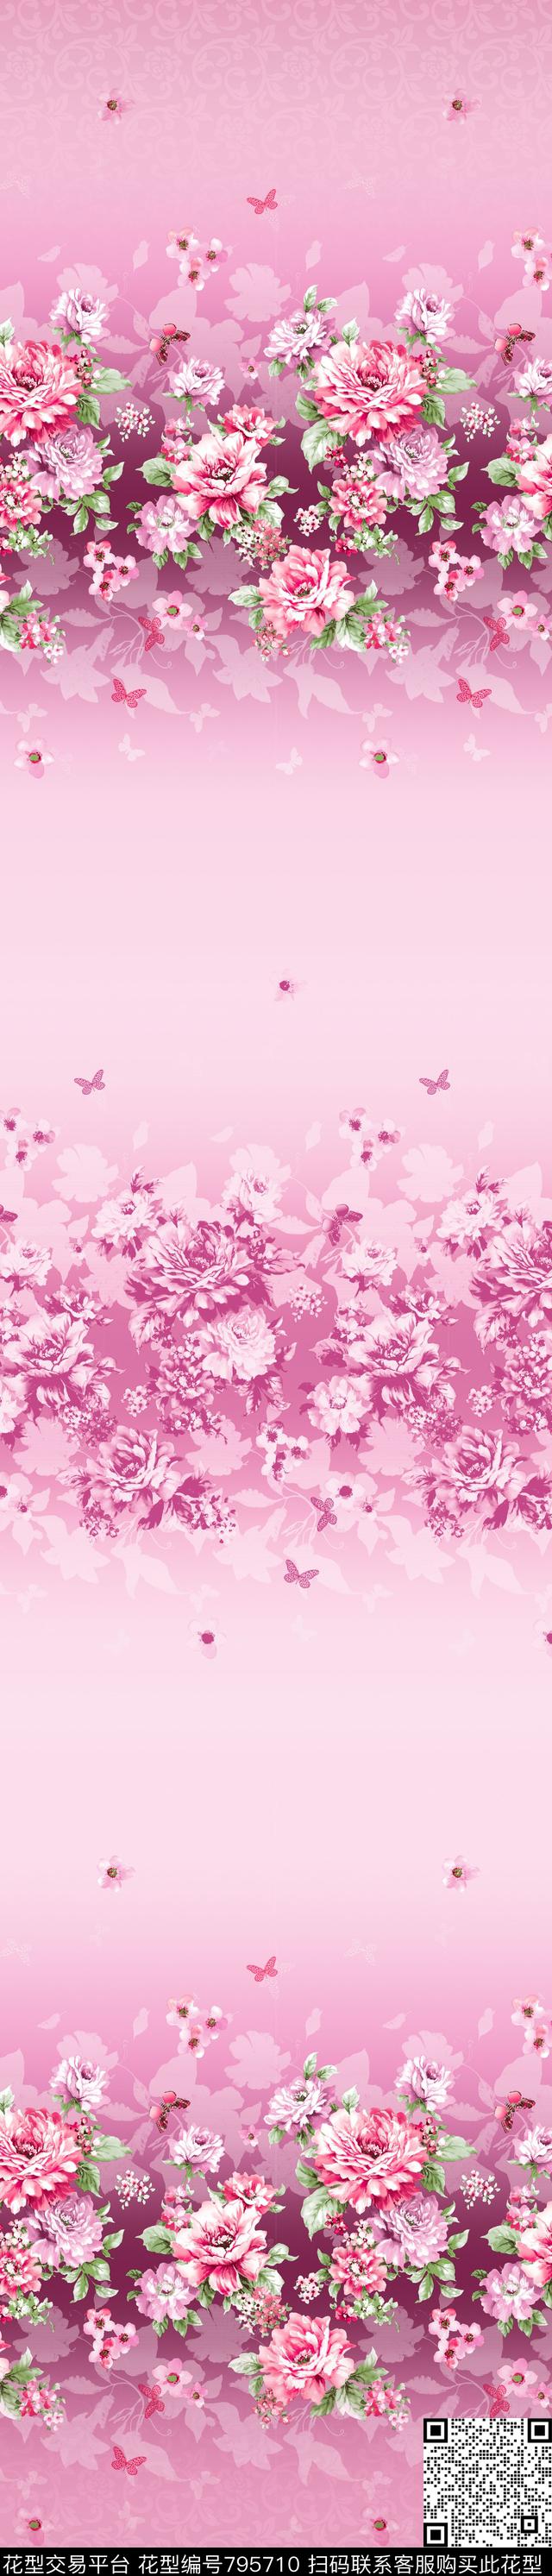 YJH0303w.jpg - 795710 - 花朵 彩条 窗帘 - 传统印花花型 － 窗帘花型设计 － 瓦栏